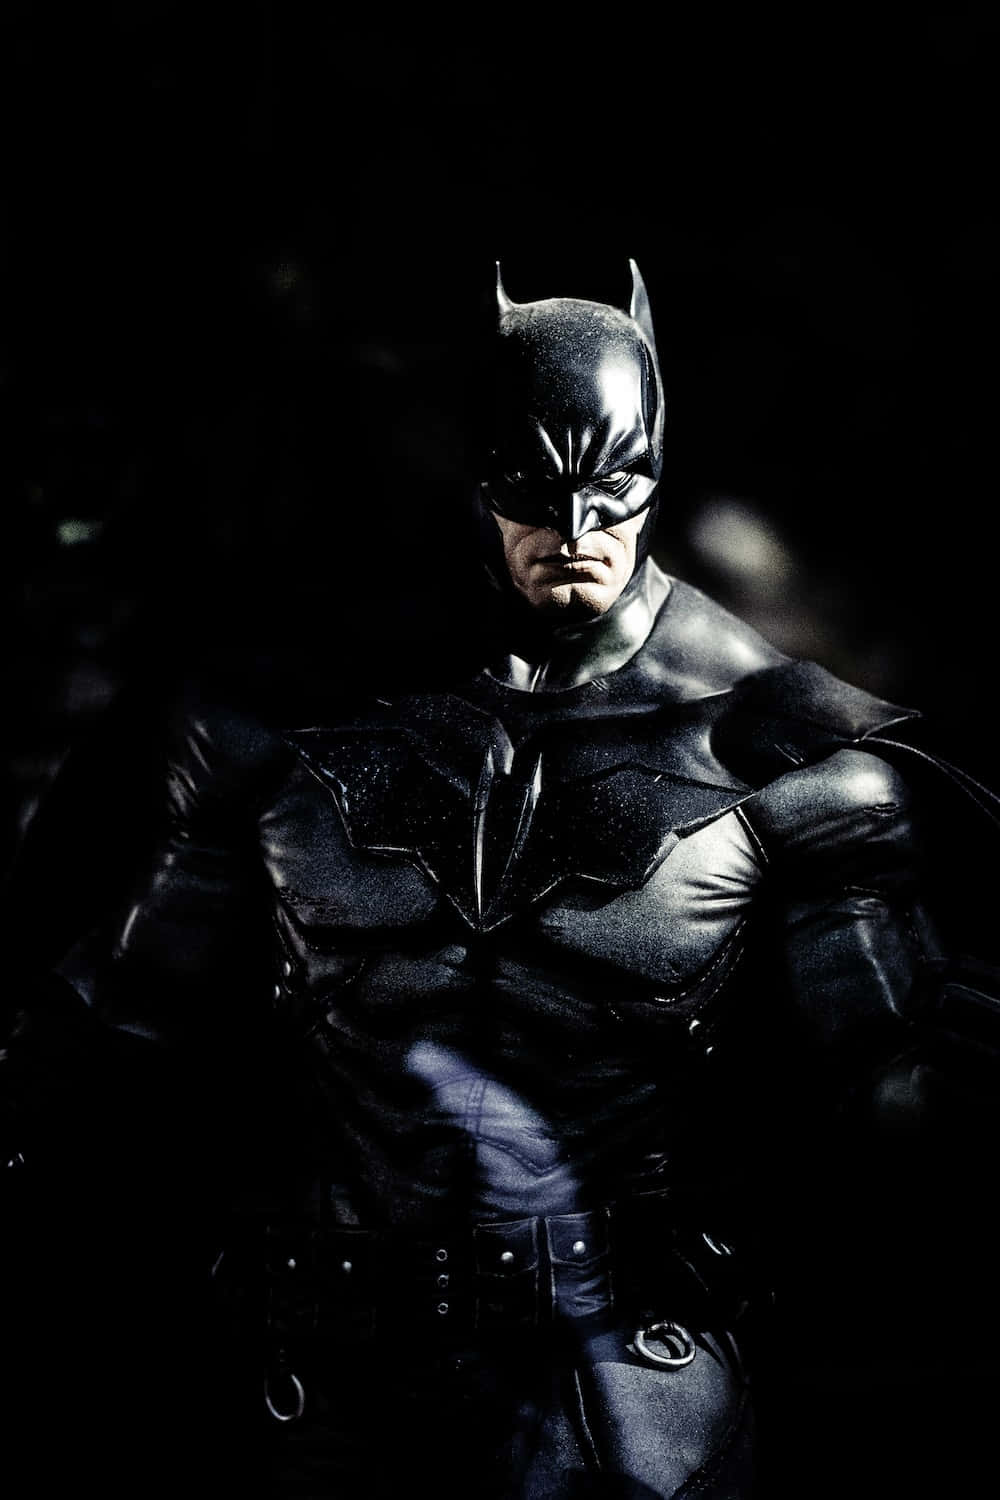 Batman Action Figure Picture